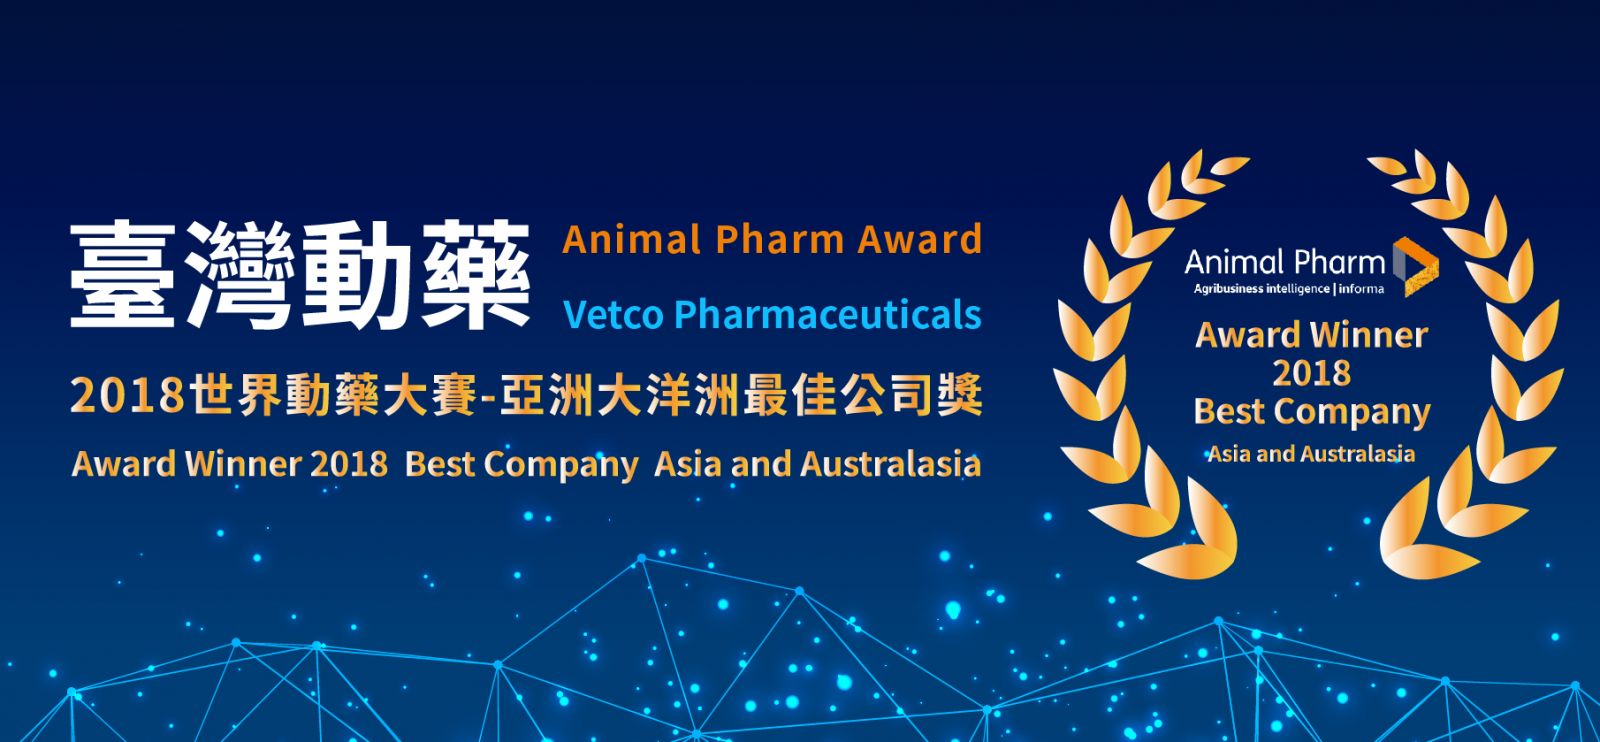 狗腫瘤,狗癌症,寵物腫瘤,寵物癌症治療藥物研發公司-2018亞洲大洋洲最佳公司獎